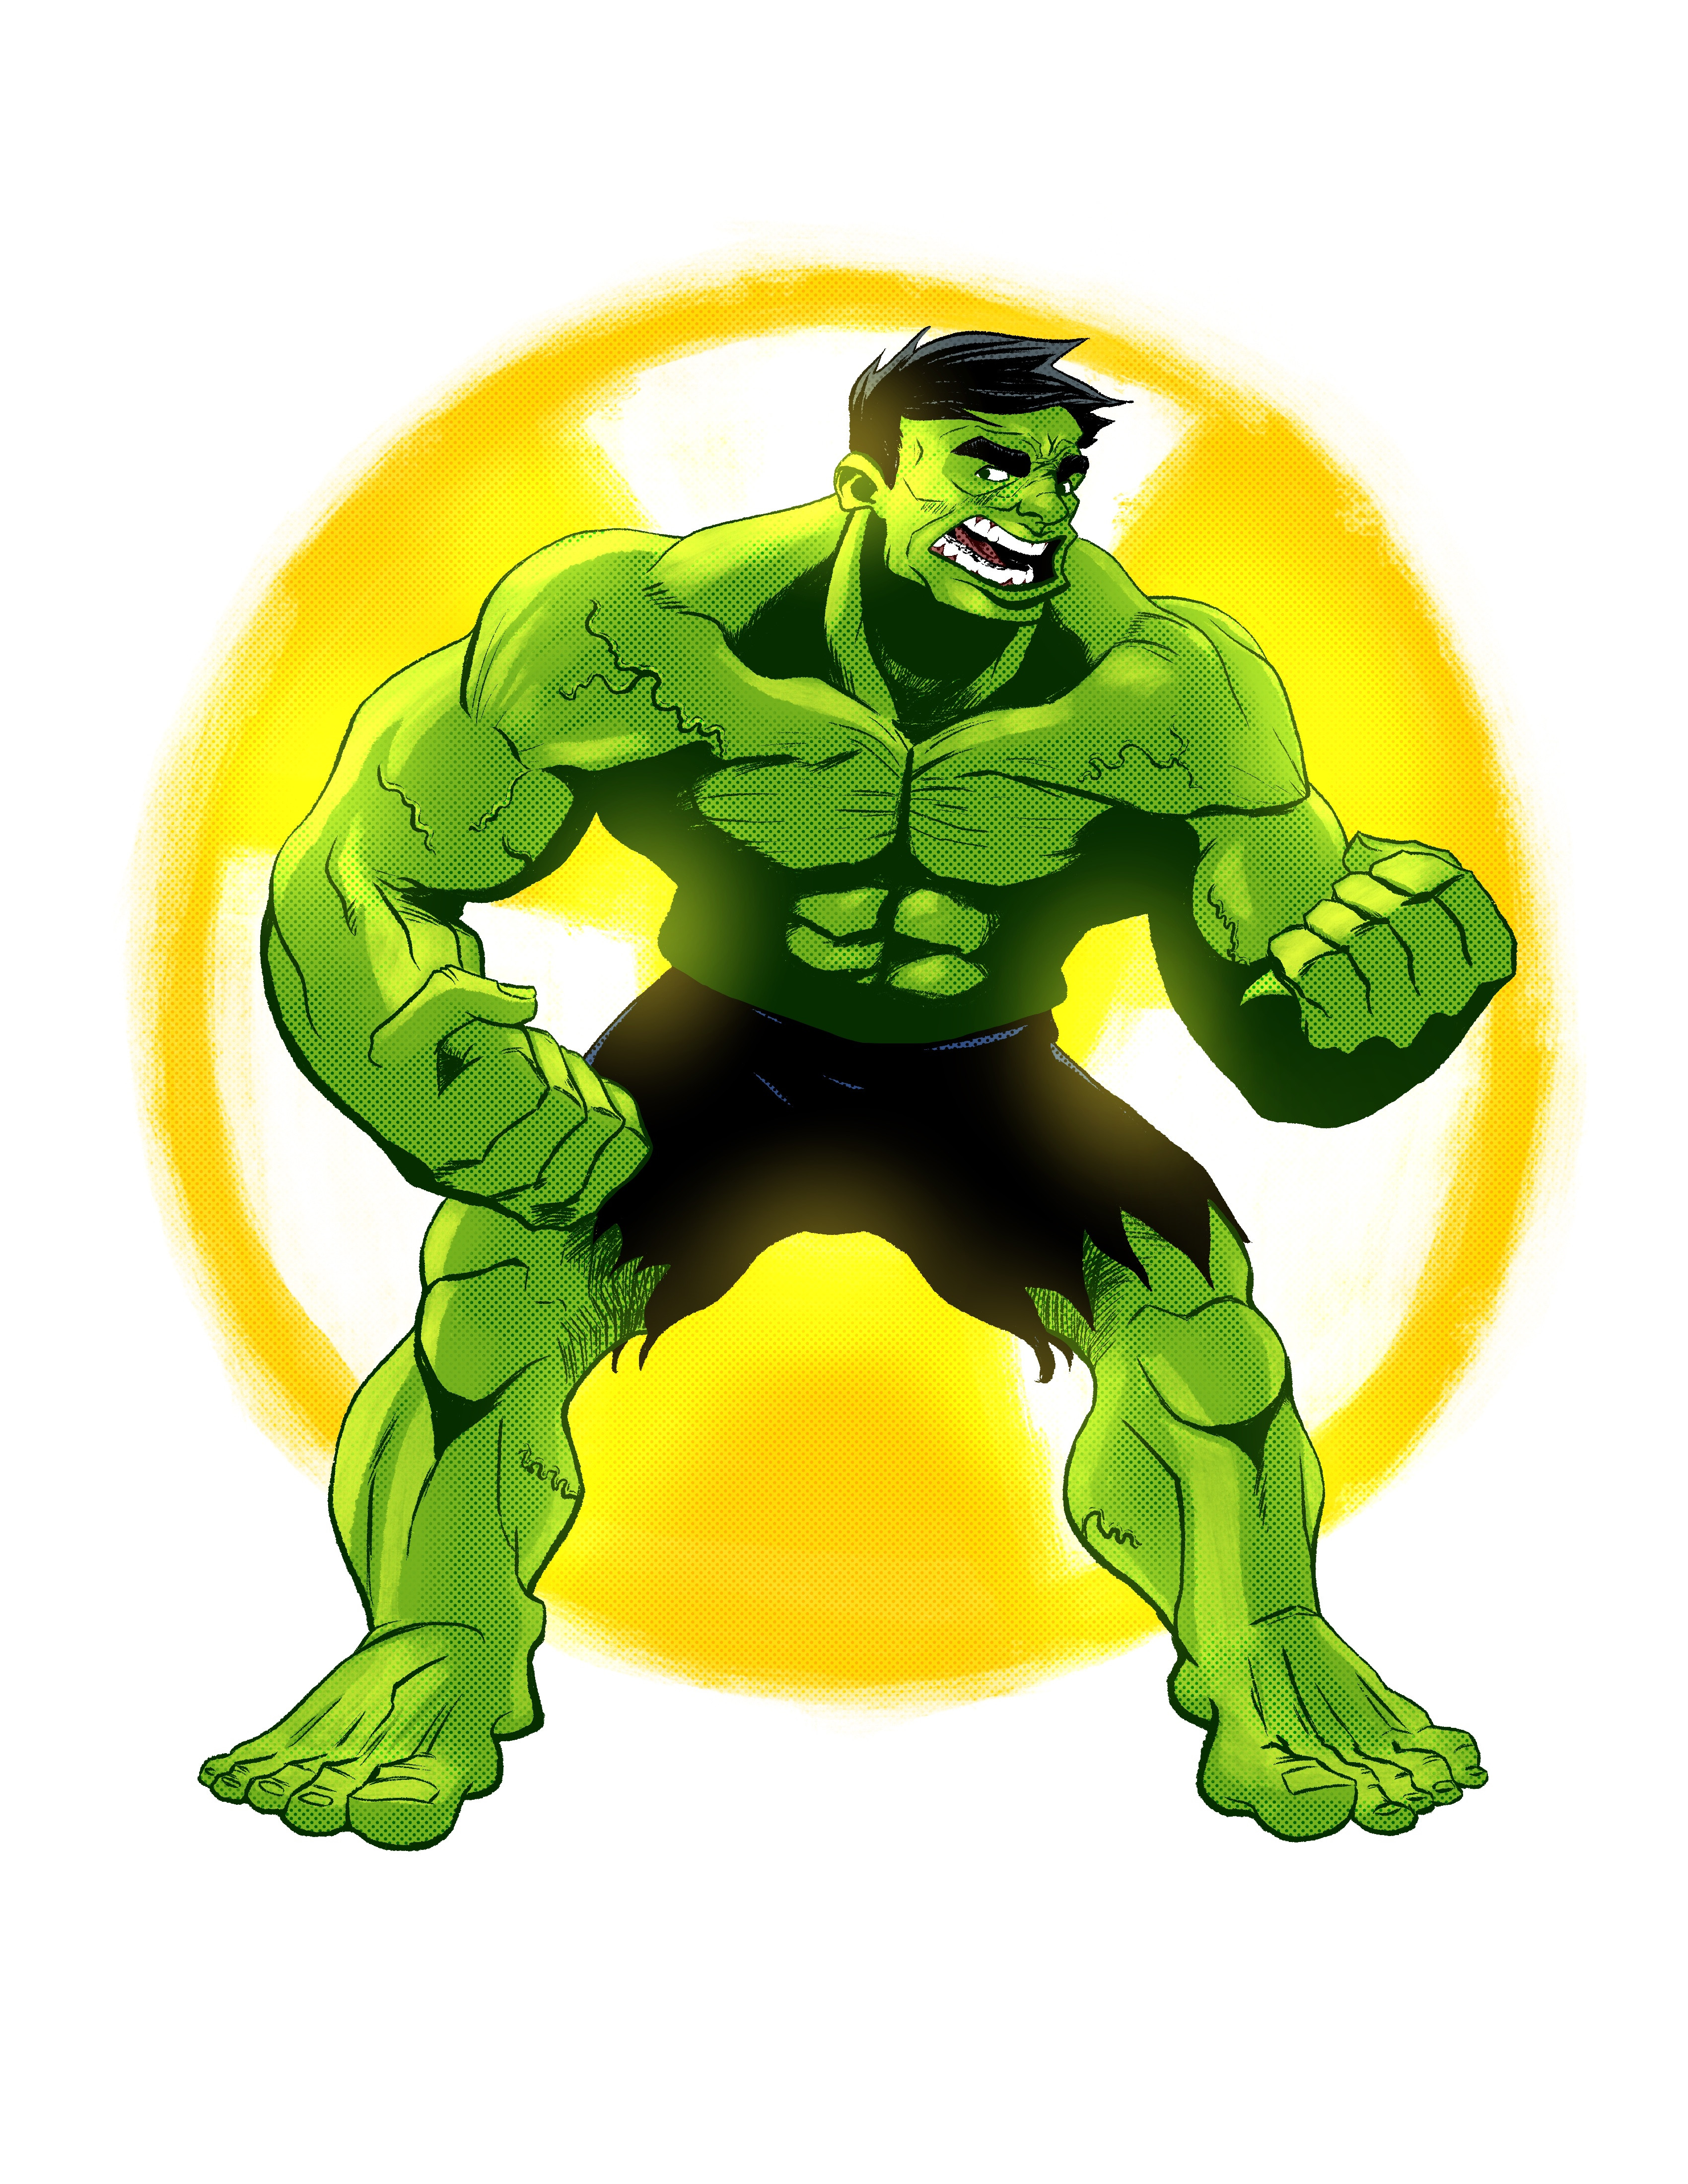 Hulk - Digital in Procreate